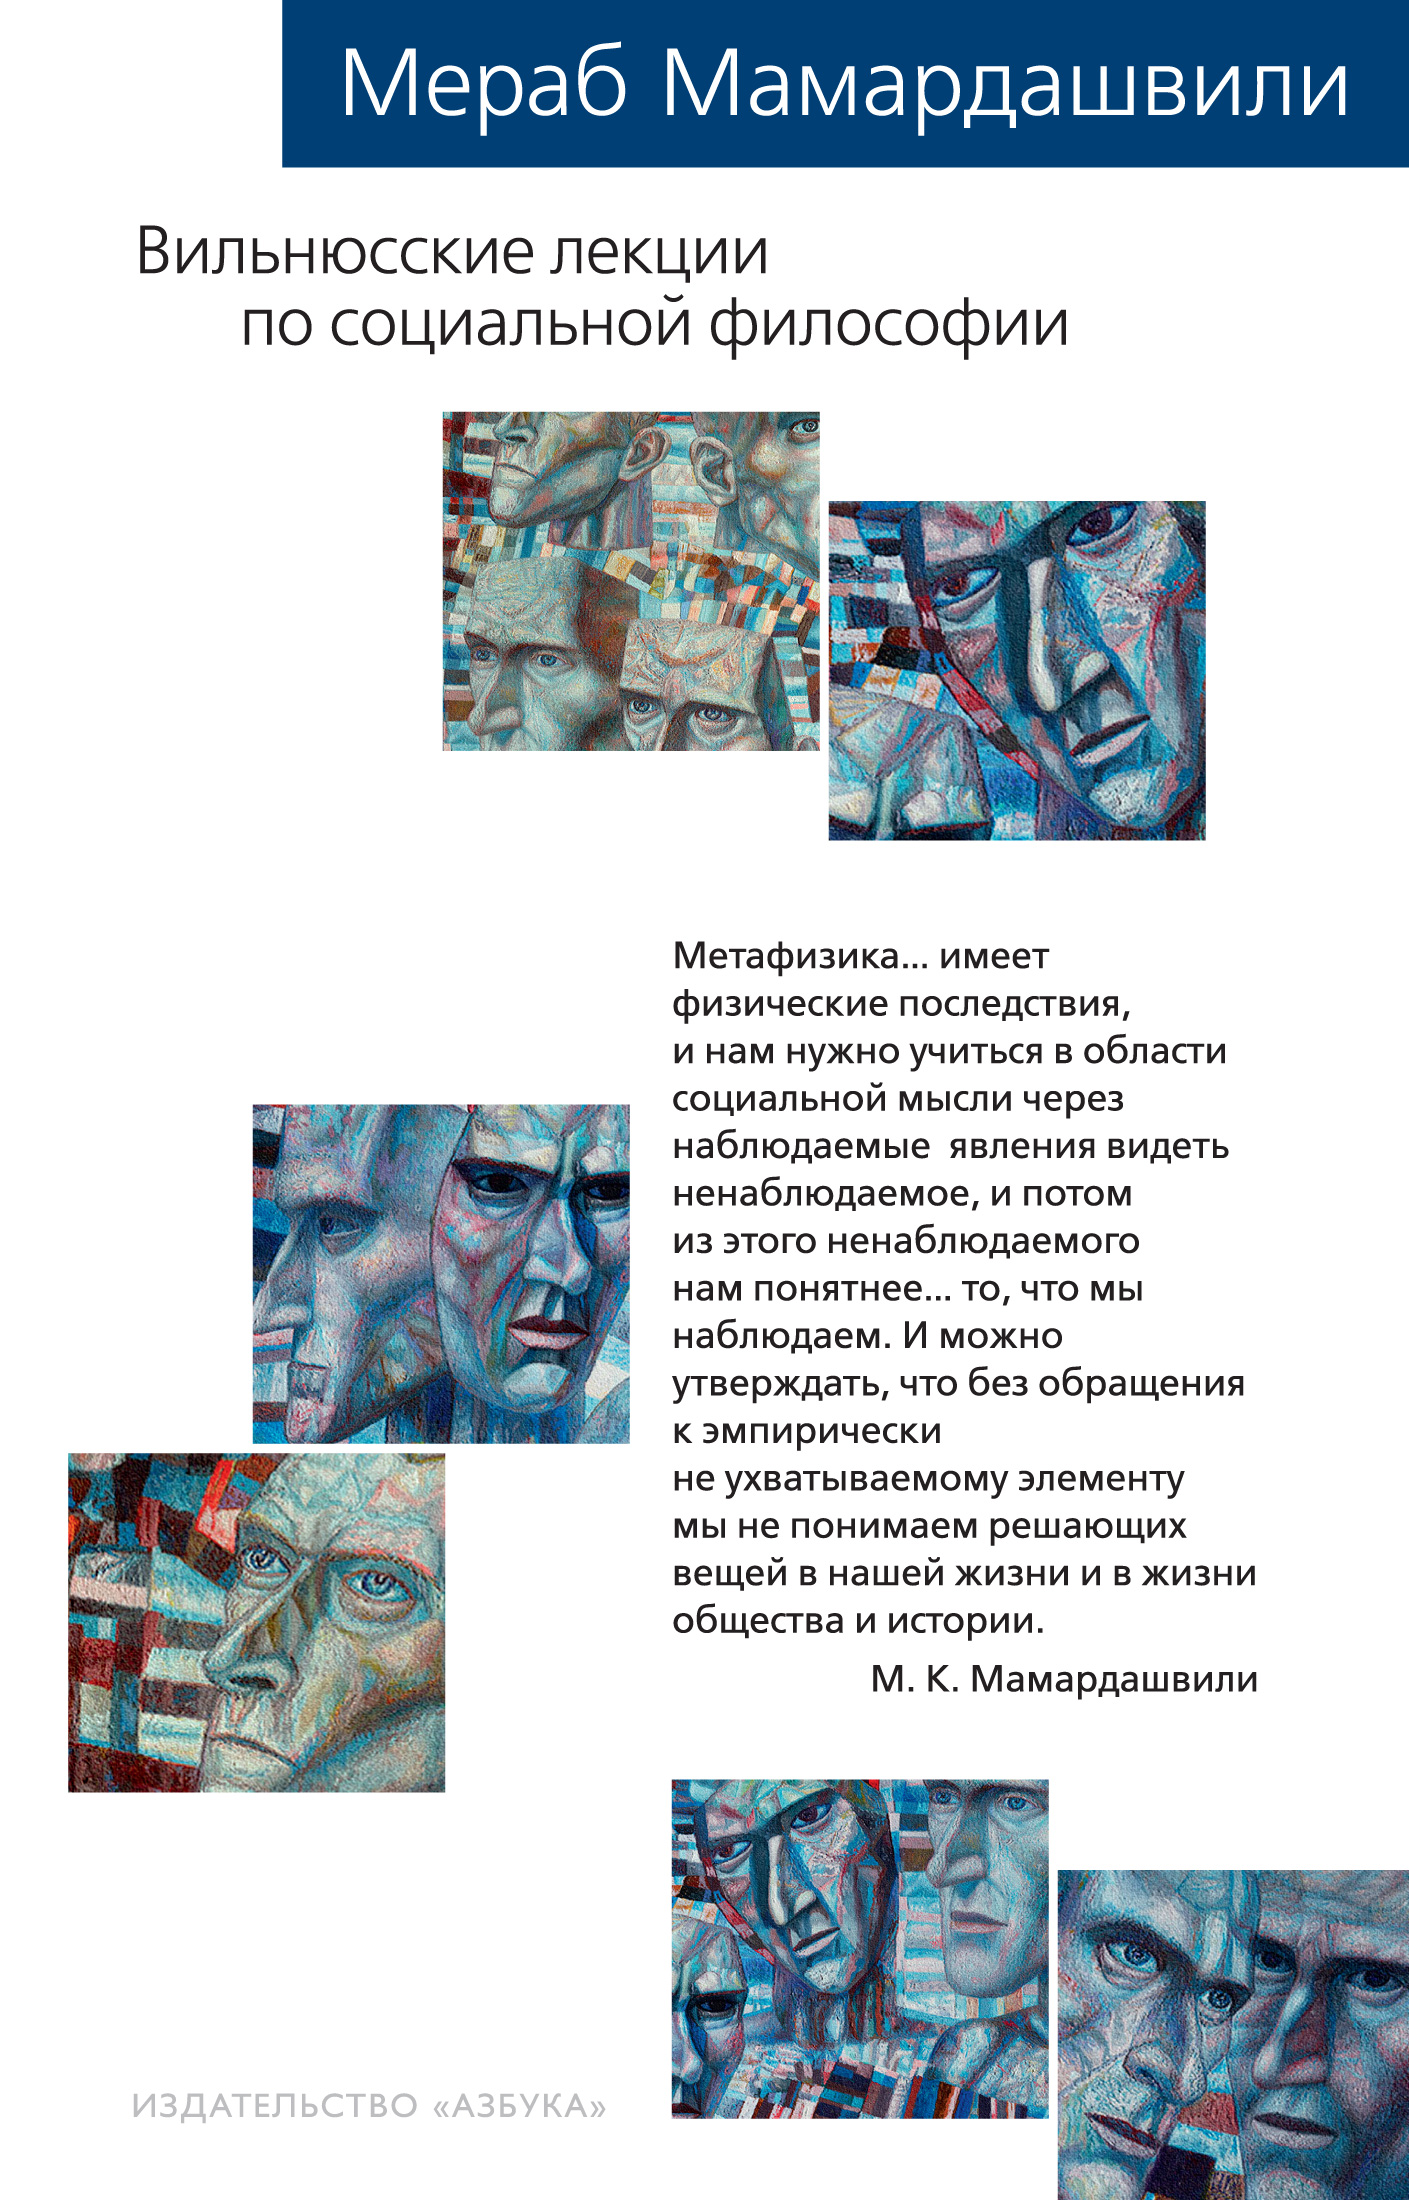 Вильнюсские лекции по социальной философии мамардашвили мераб константинович вильнюсские лекции по социальной философии